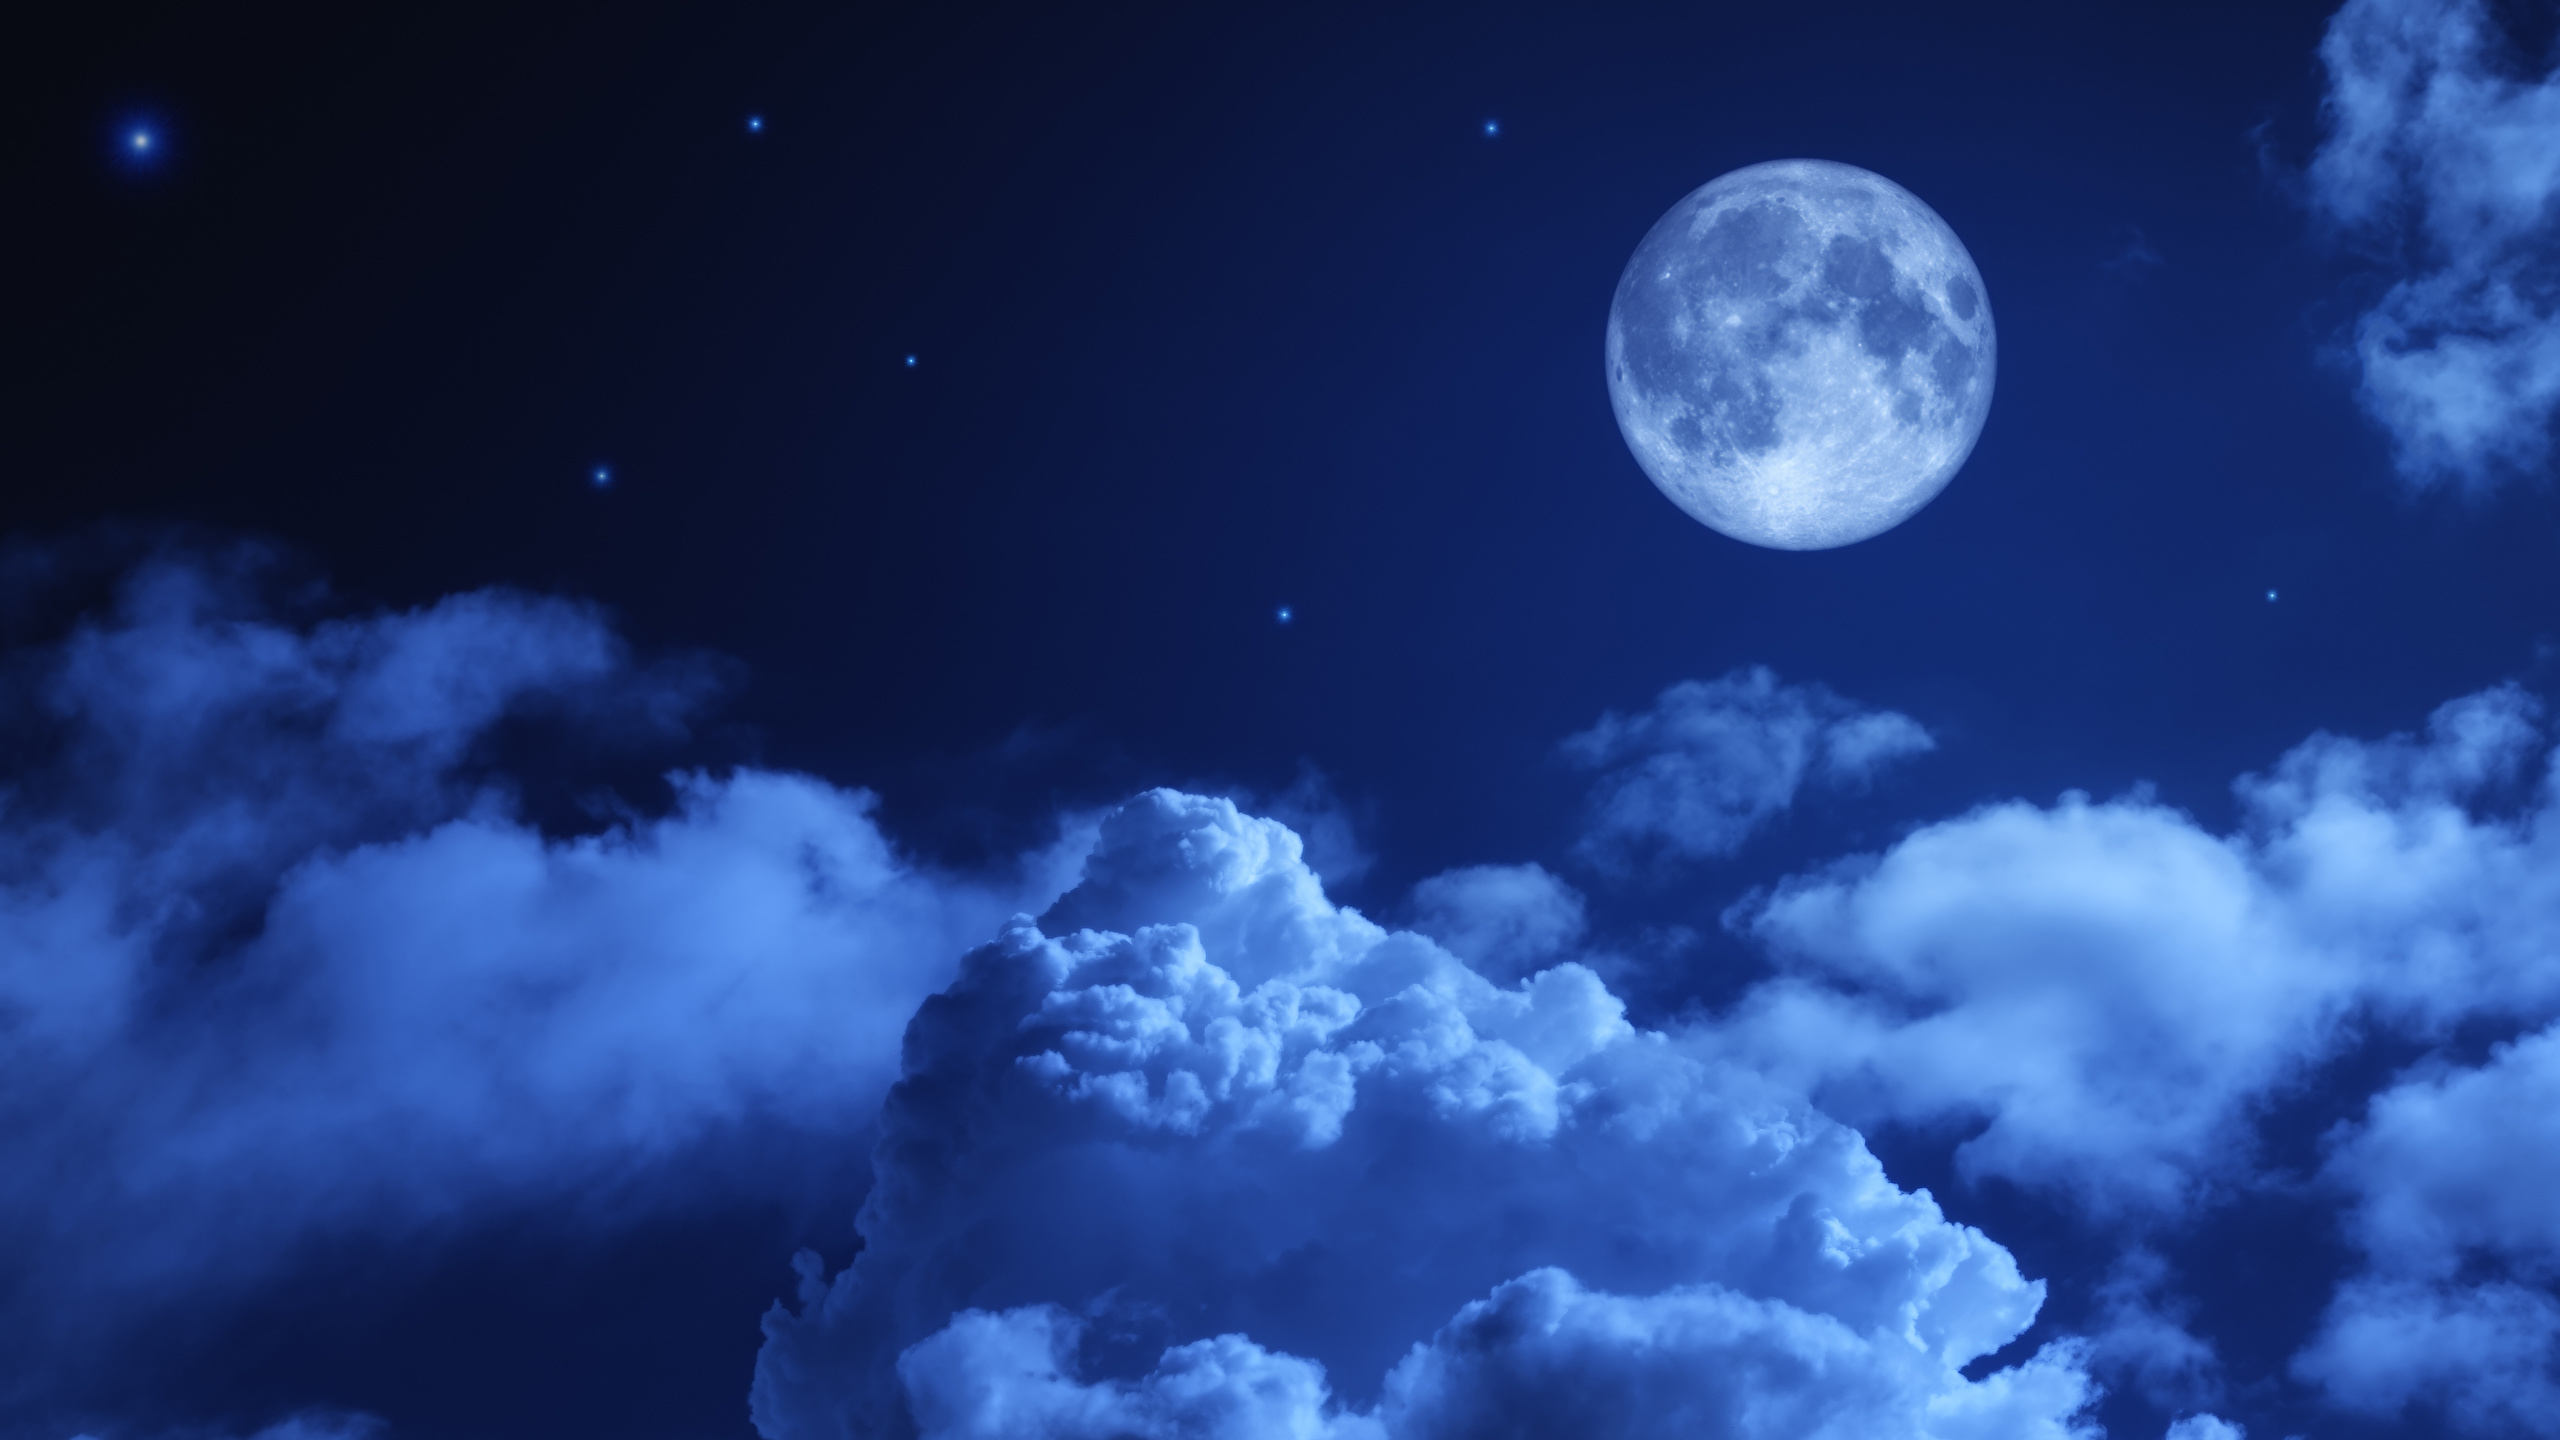 壁紙 2560x1440 空 夜 月 雲 自然 ダウンロード 写真